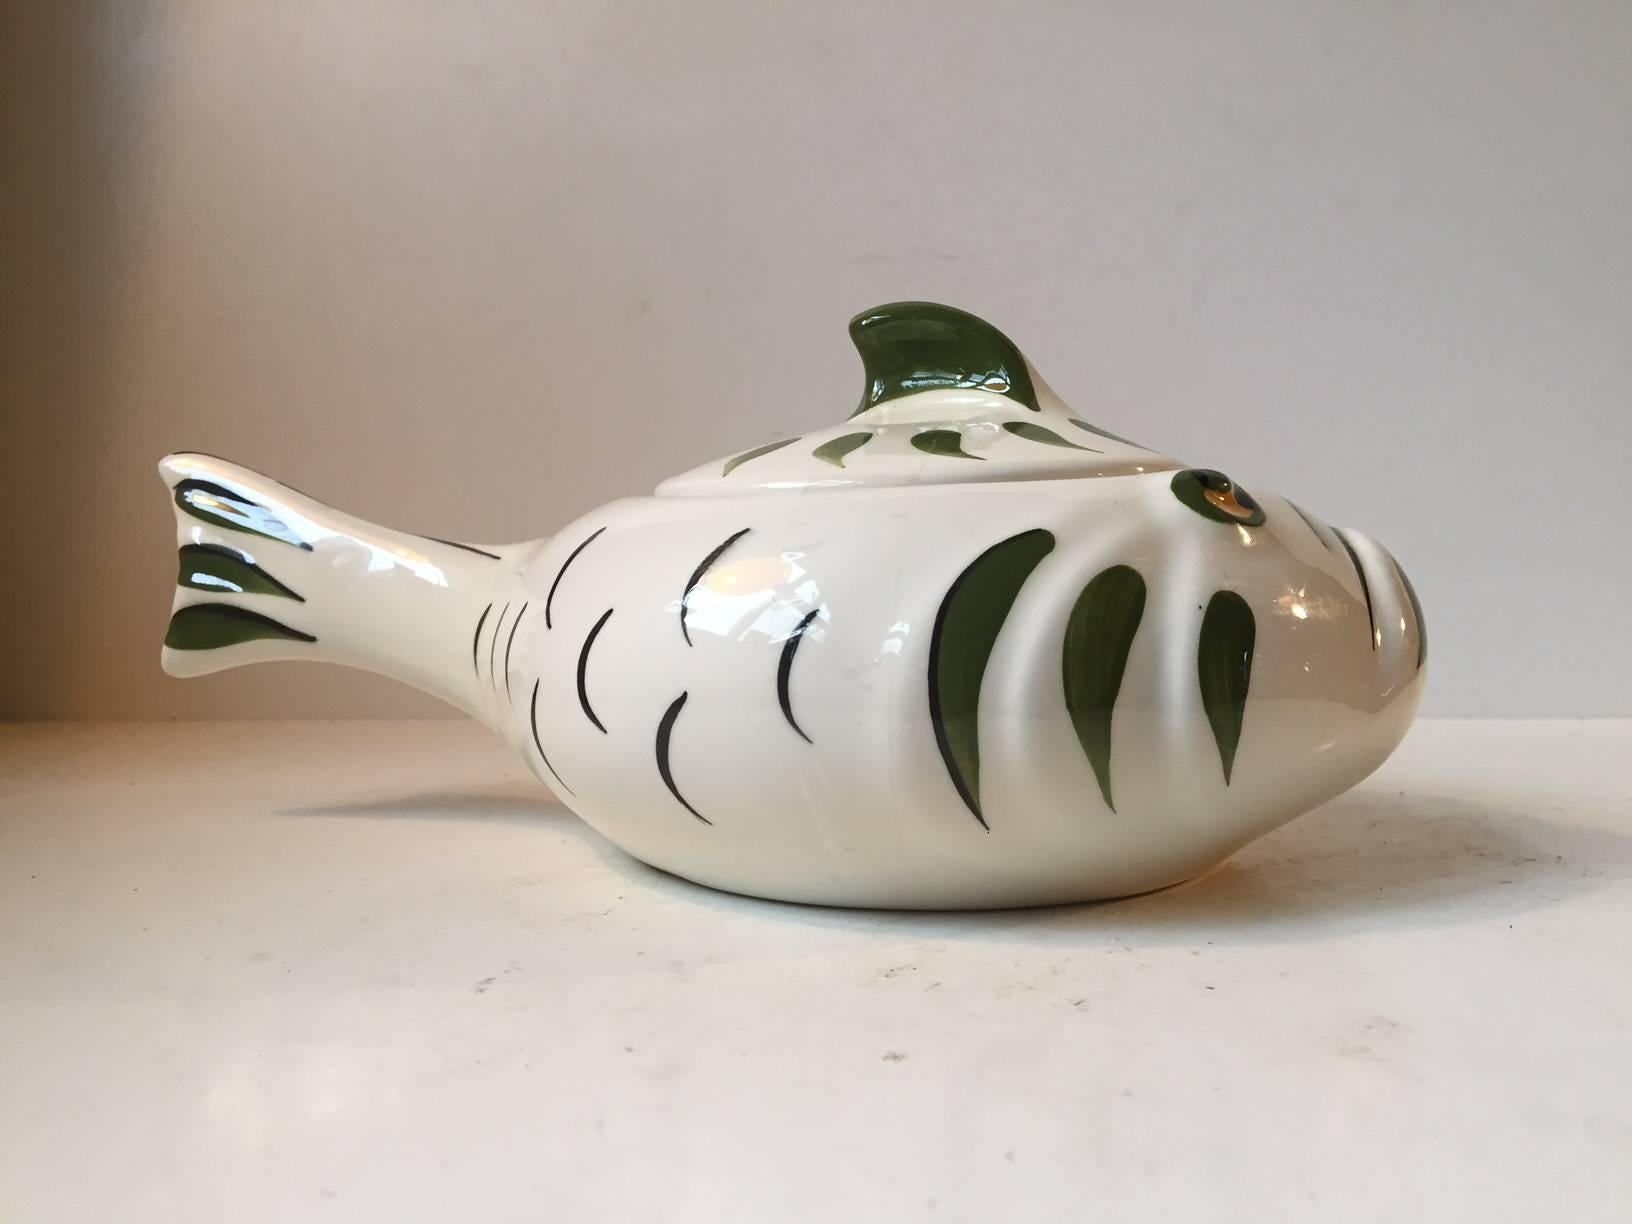 Glazed Danish Modernist Pottery Monkfish, Lidded Bowl by Knabstrup, 1950s